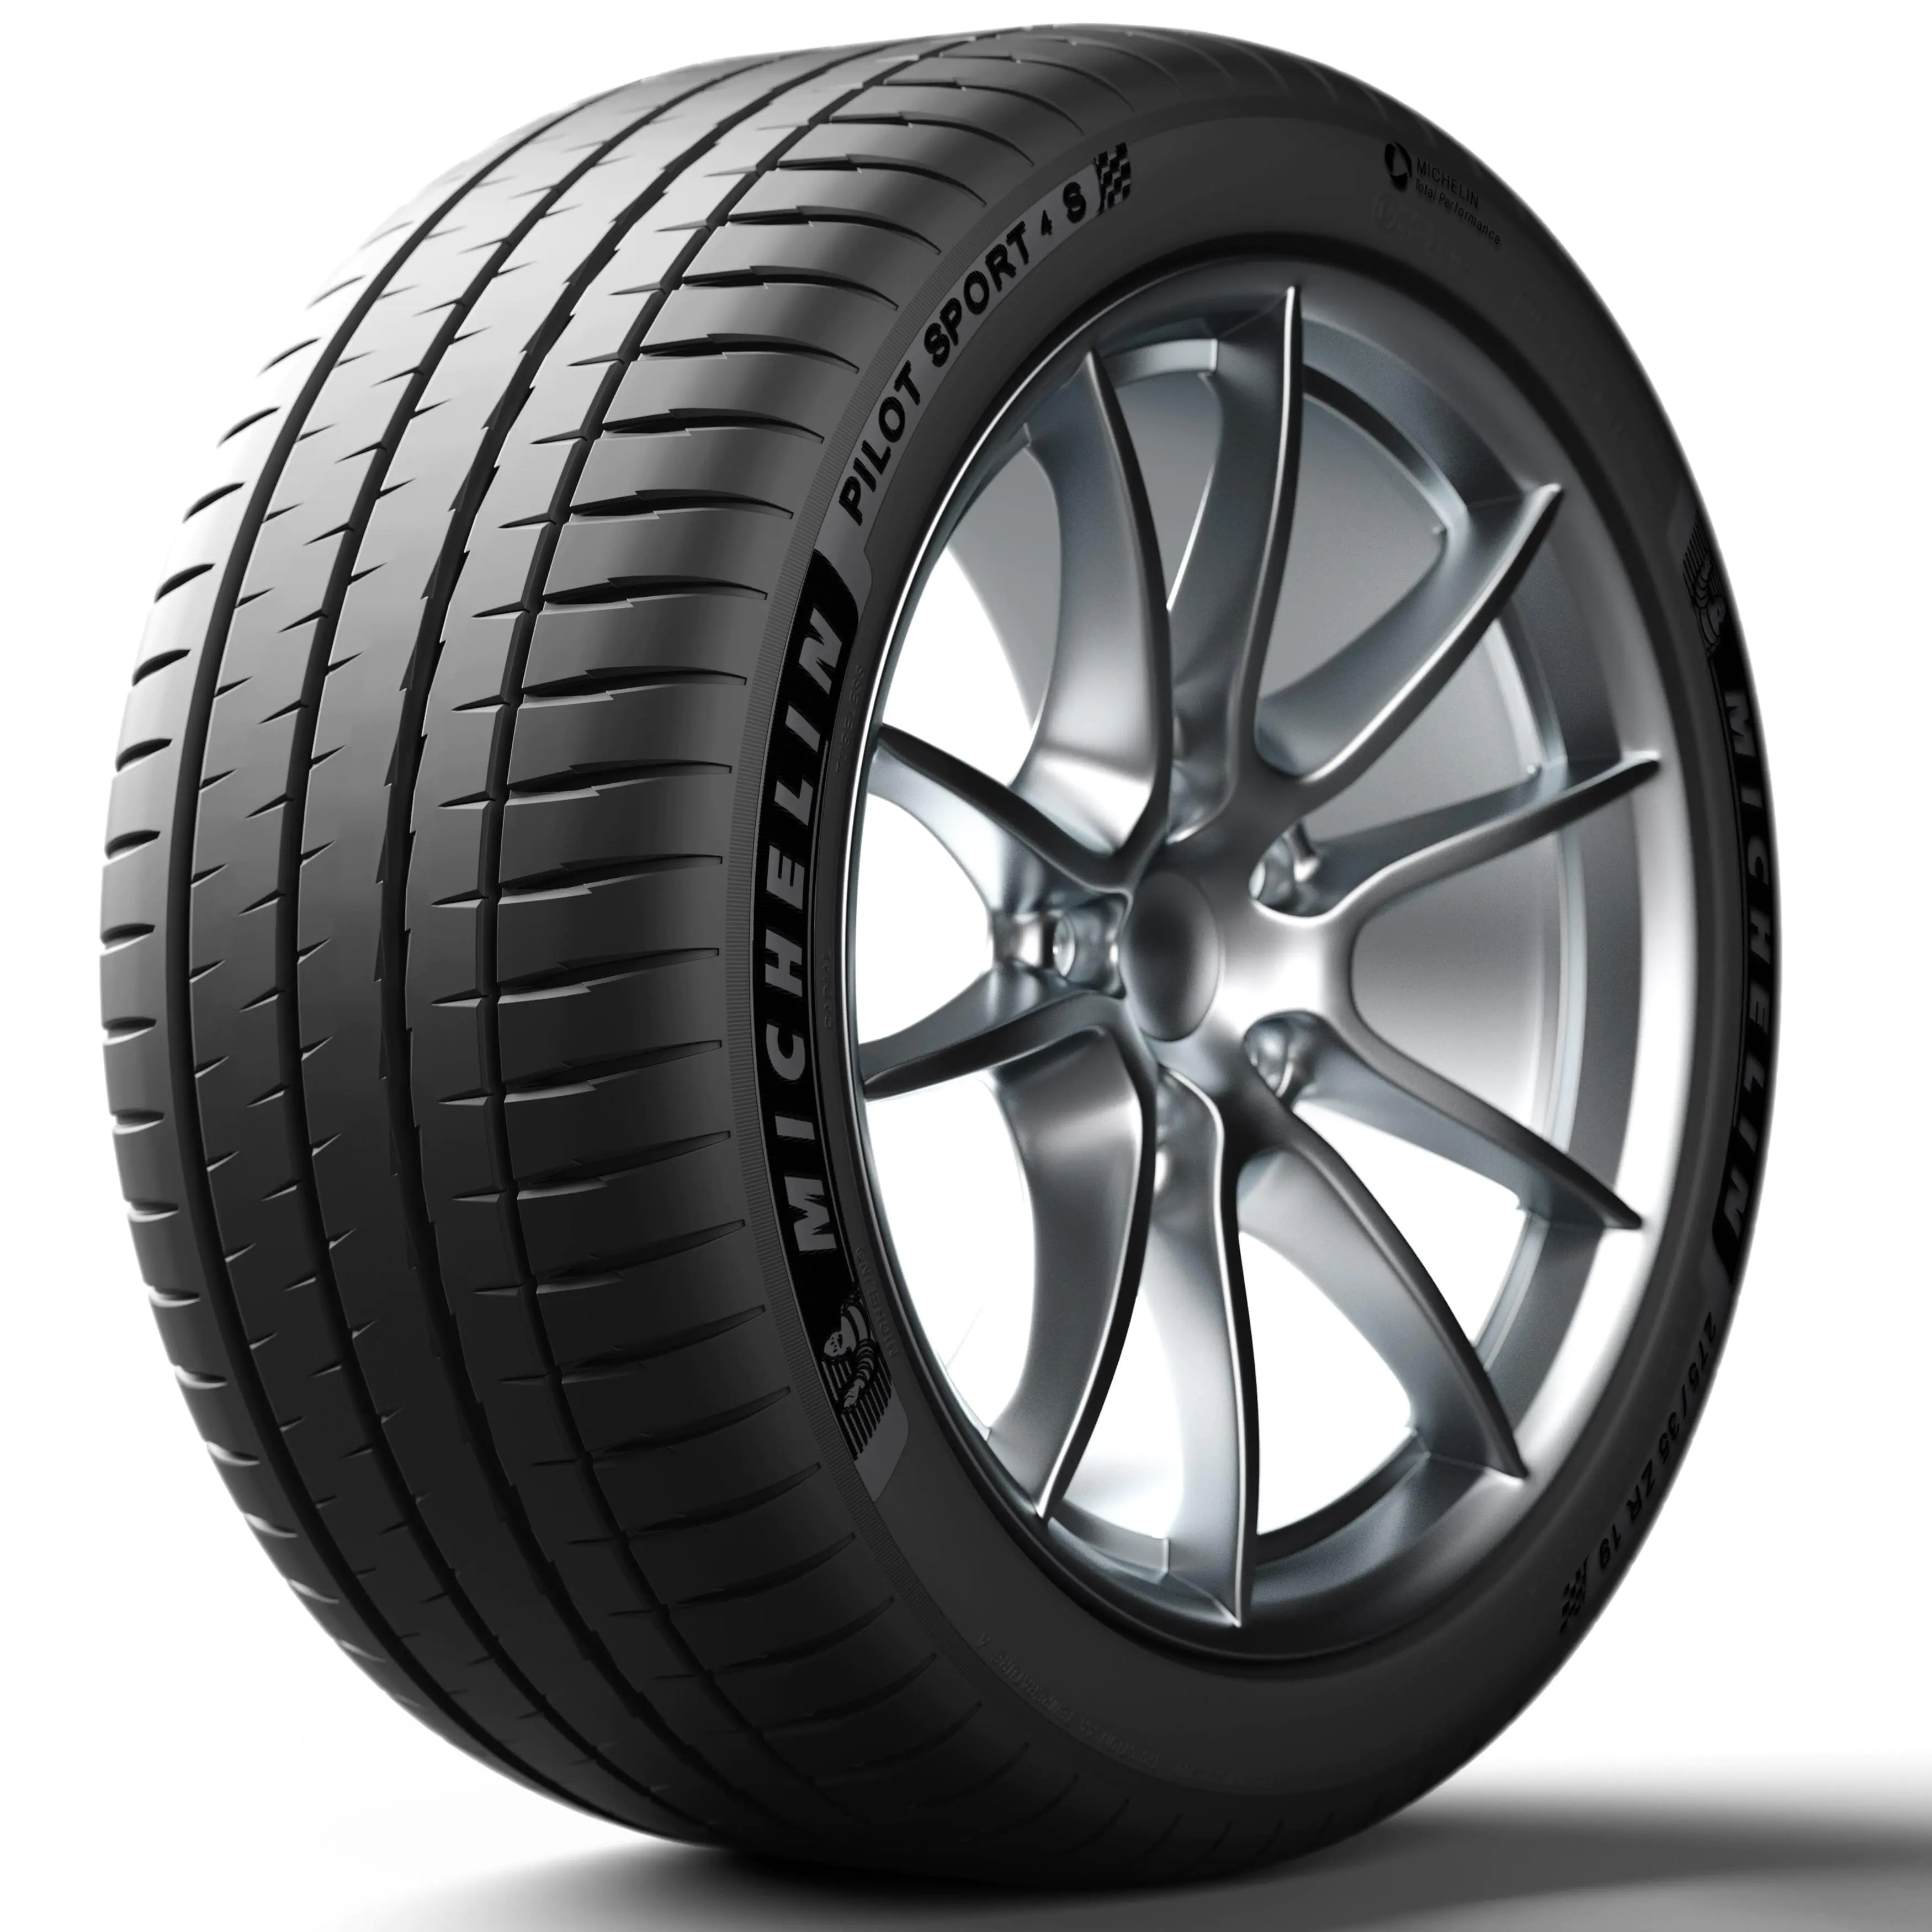 Michelin Michelin 305/30 R21 104Y P.SPORT 4 S XL pneumatici nuovi Estivo 